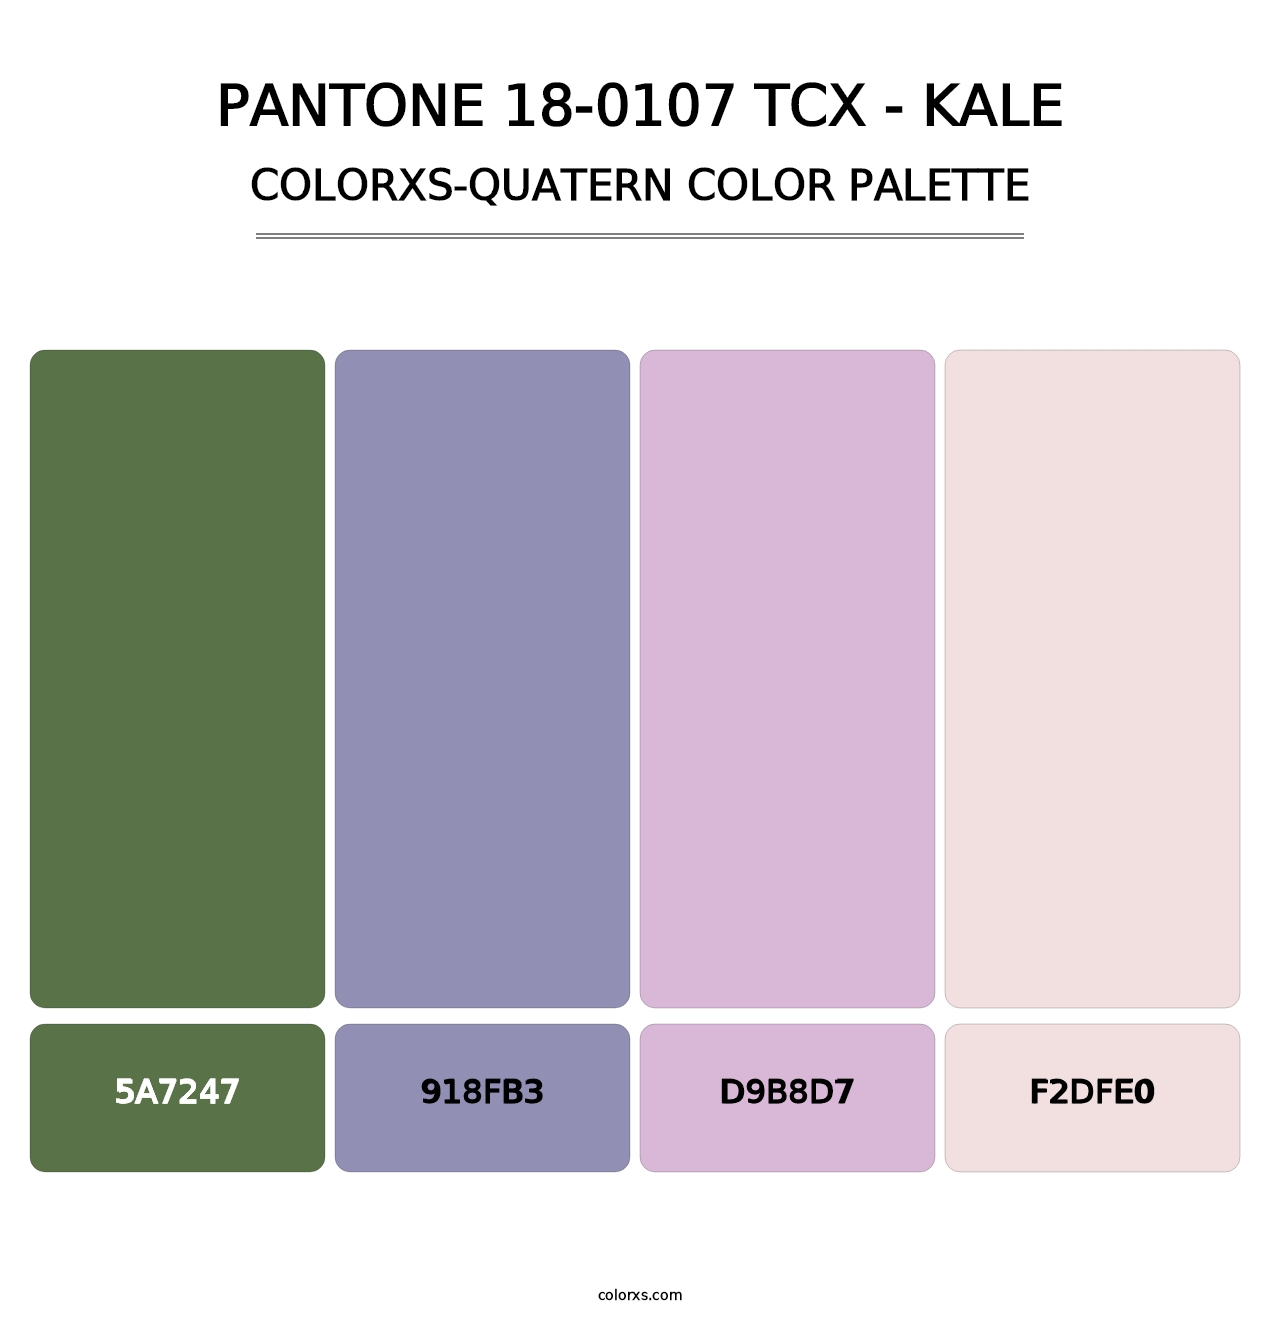 PANTONE 18-0107 TCX - Kale - Colorxs Quatern Palette